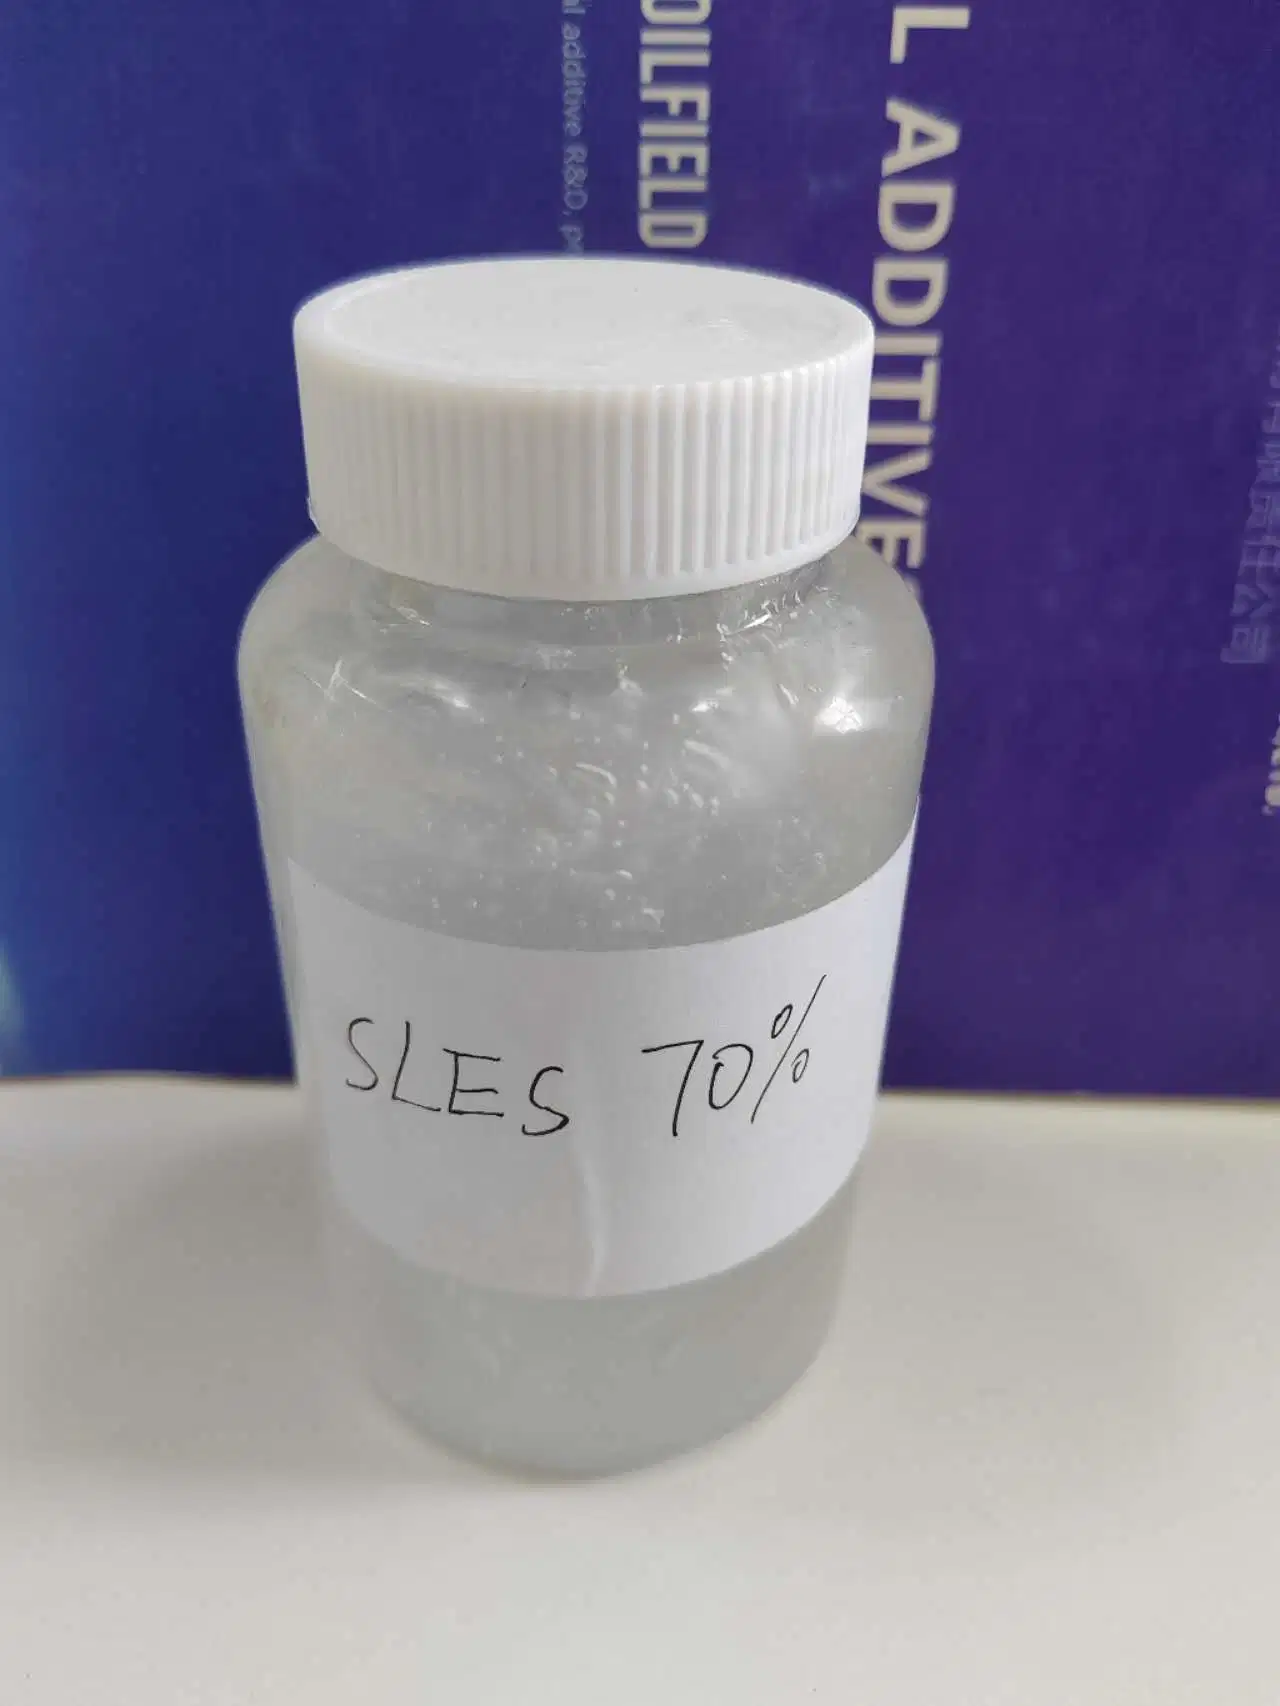 SLES 70% сульфат натрия Lauryl эфир для косметического средства для стирки